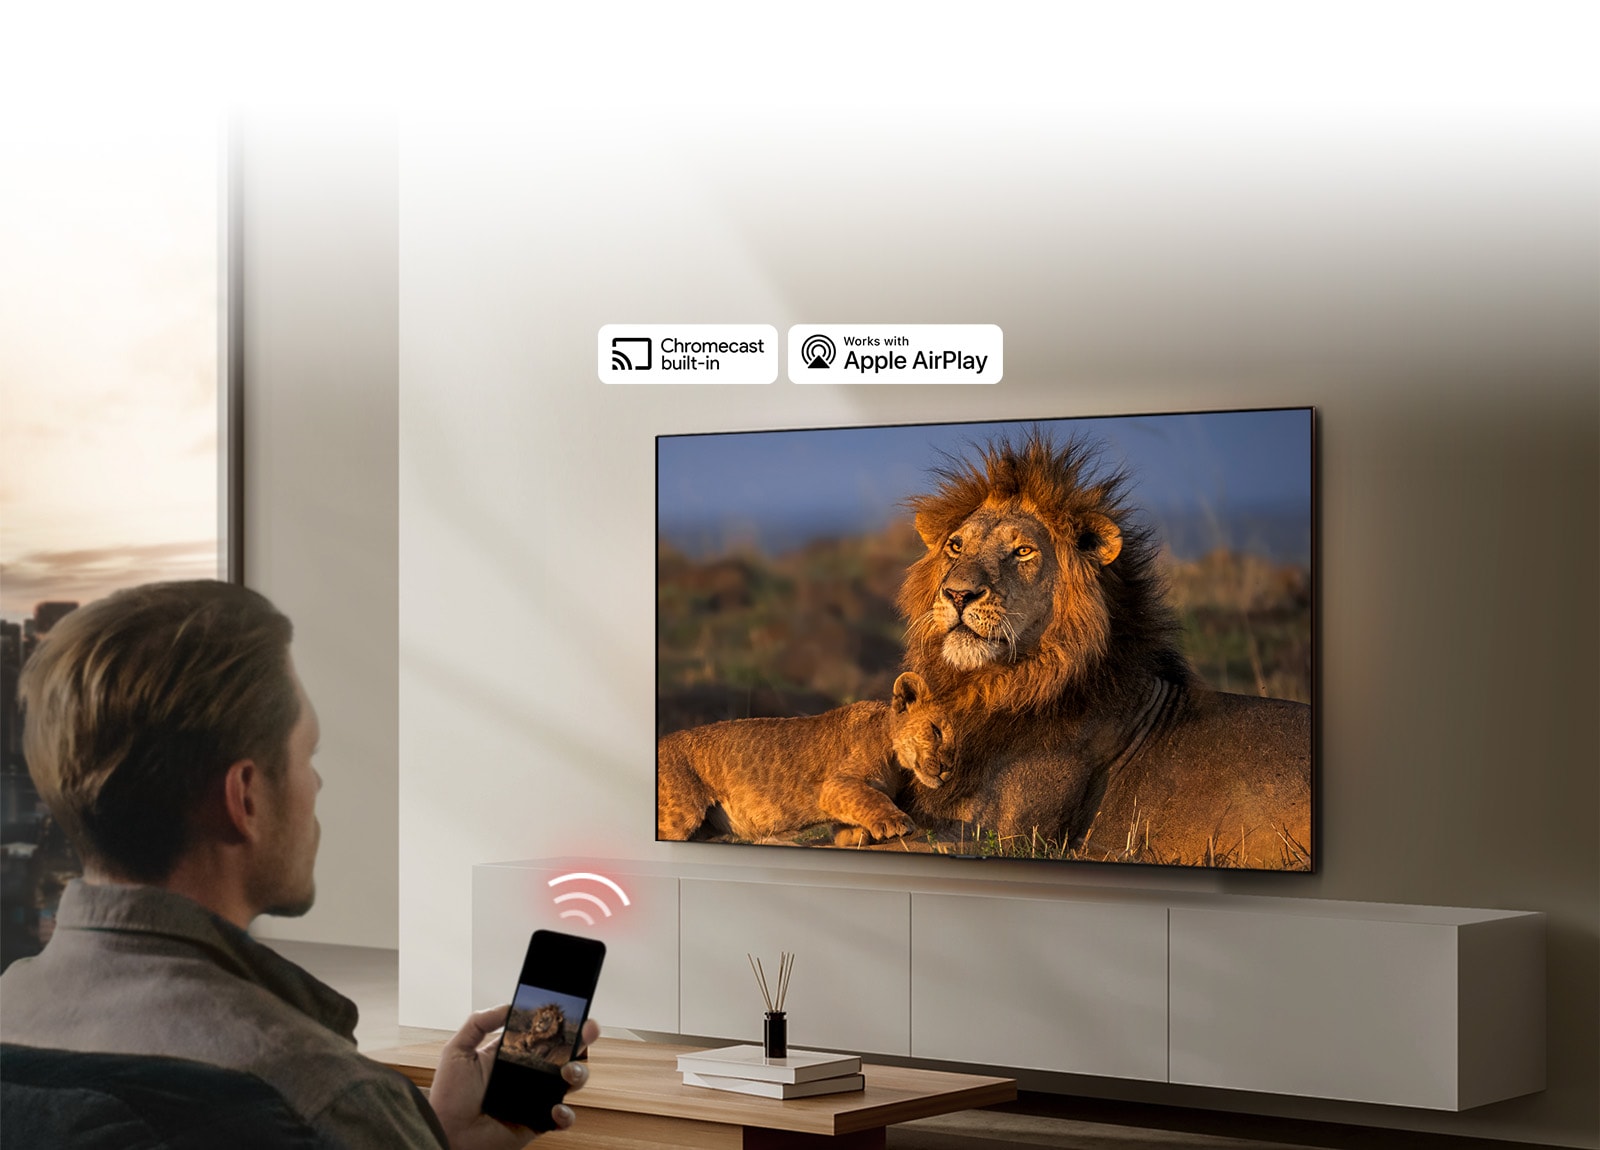 Een LG TV gemonteerd op de muur in een huiskamer, met een leeuw en leeuwenwelpje in beeld. Een man zit in de voorgrond met een smartphone in de hand met dezelfde leeuwen in beeld. Er wordt een graphic weergegeven met drie neonrode gebogen balken boven de smartphone, gericht op de TV.